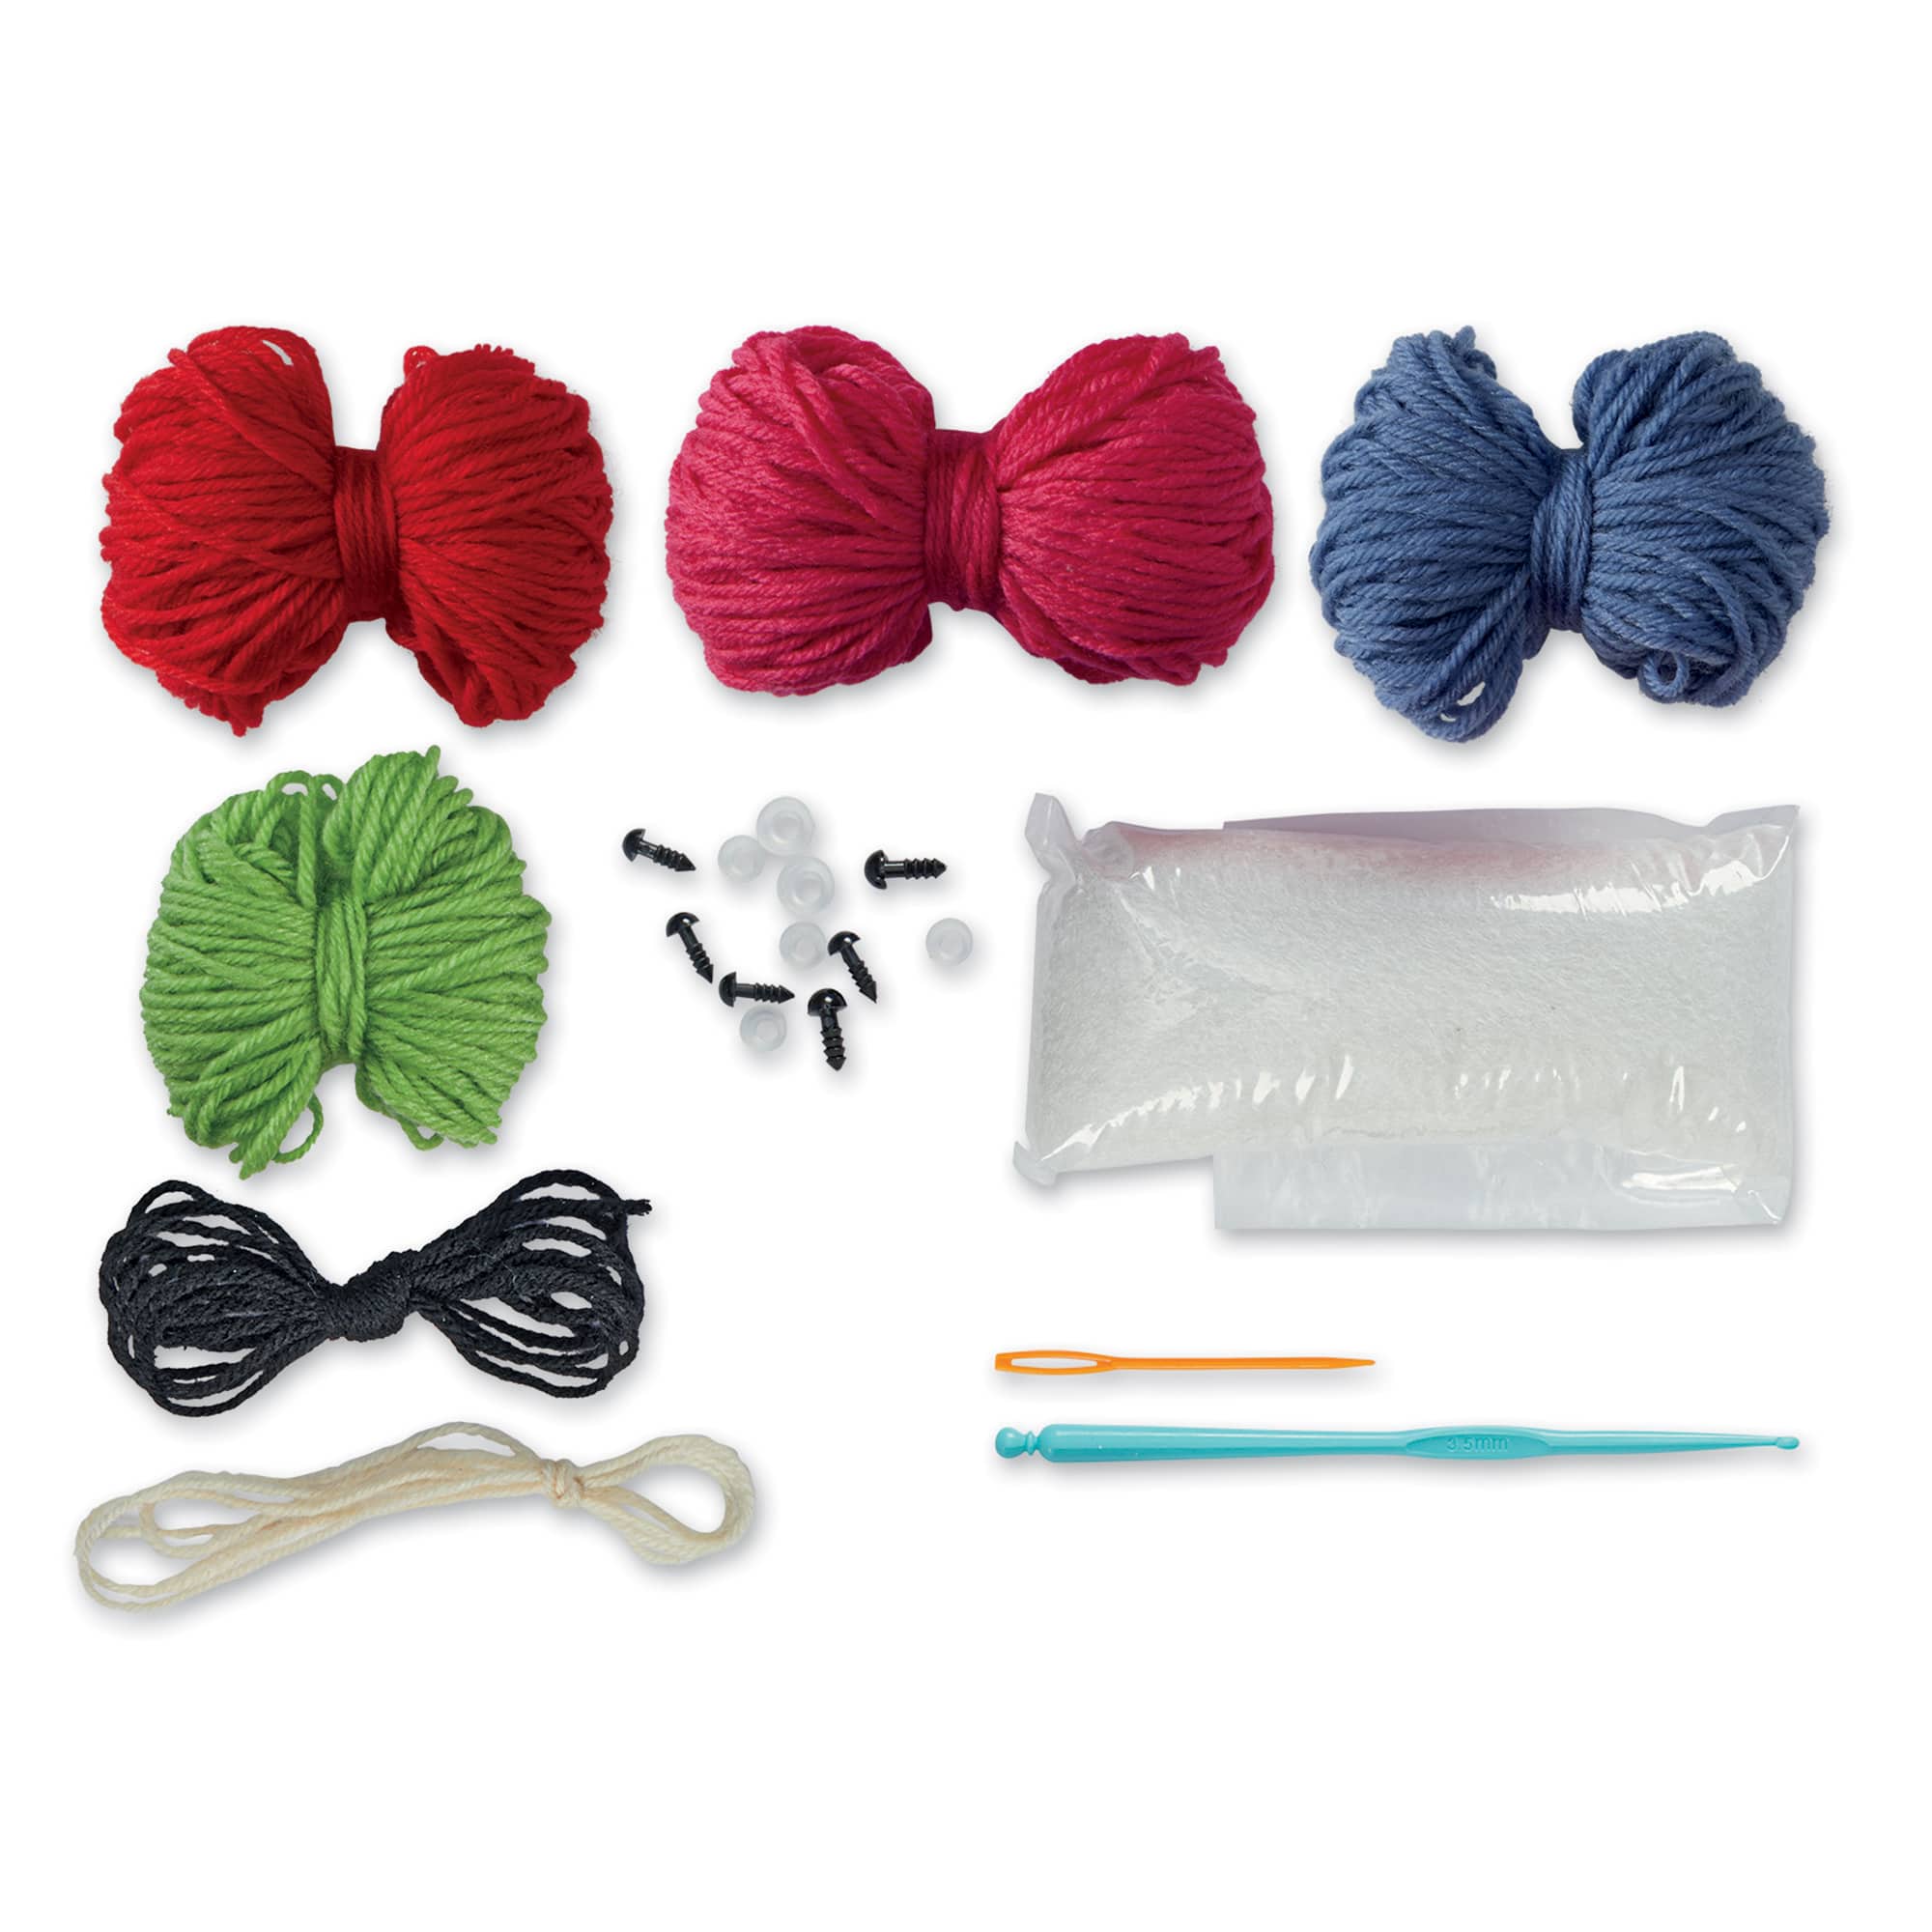 Intermediate Berries Amigurumi Crochet Kit by Loops &#x26; Threads&#xAE;